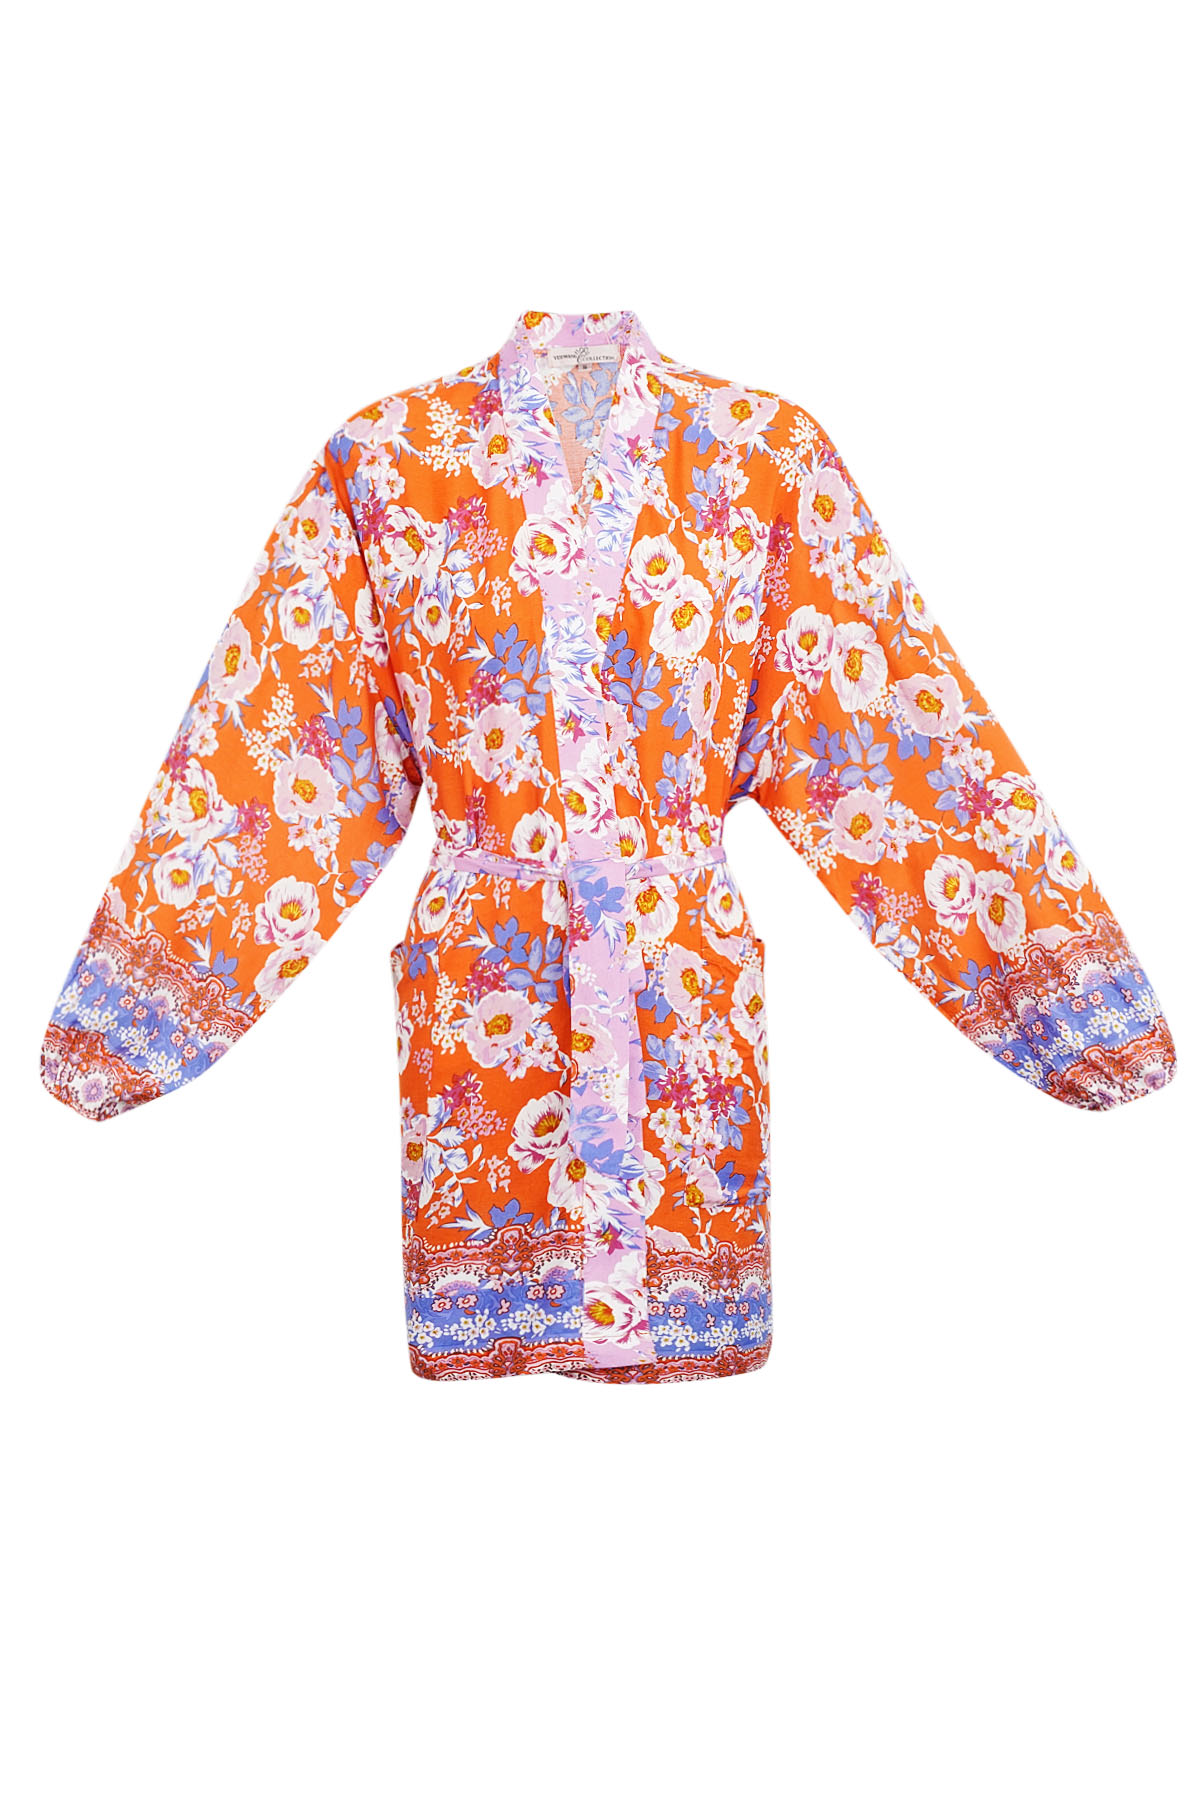 Short kimono orange flowers - multi